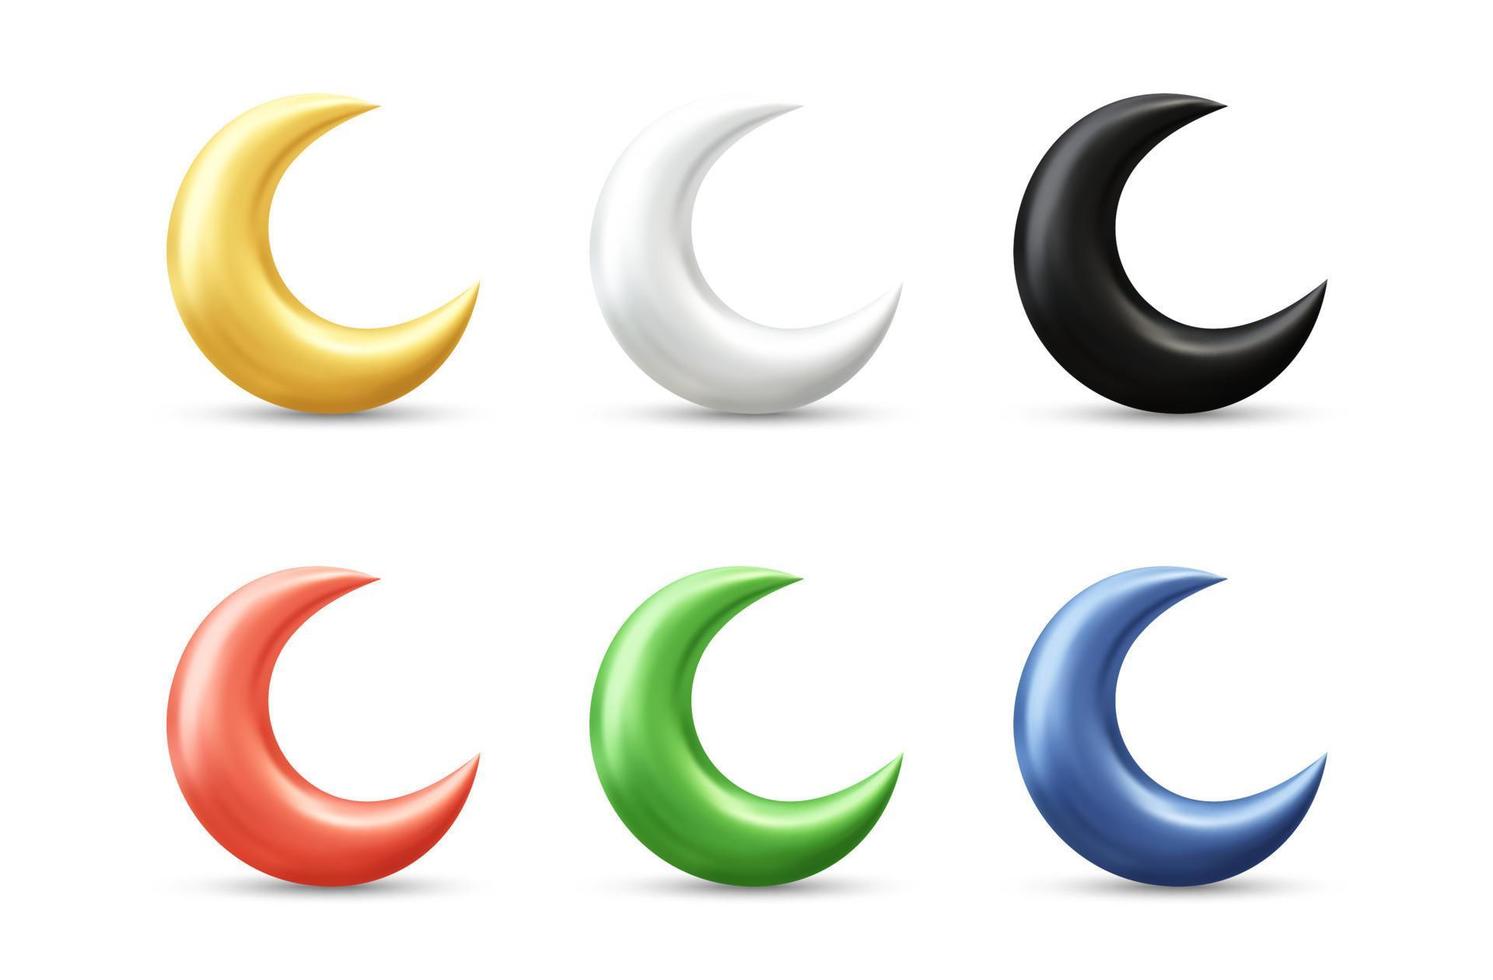 wassende maan realistische 3d vector pictogram illustratie met verschillende kleuren